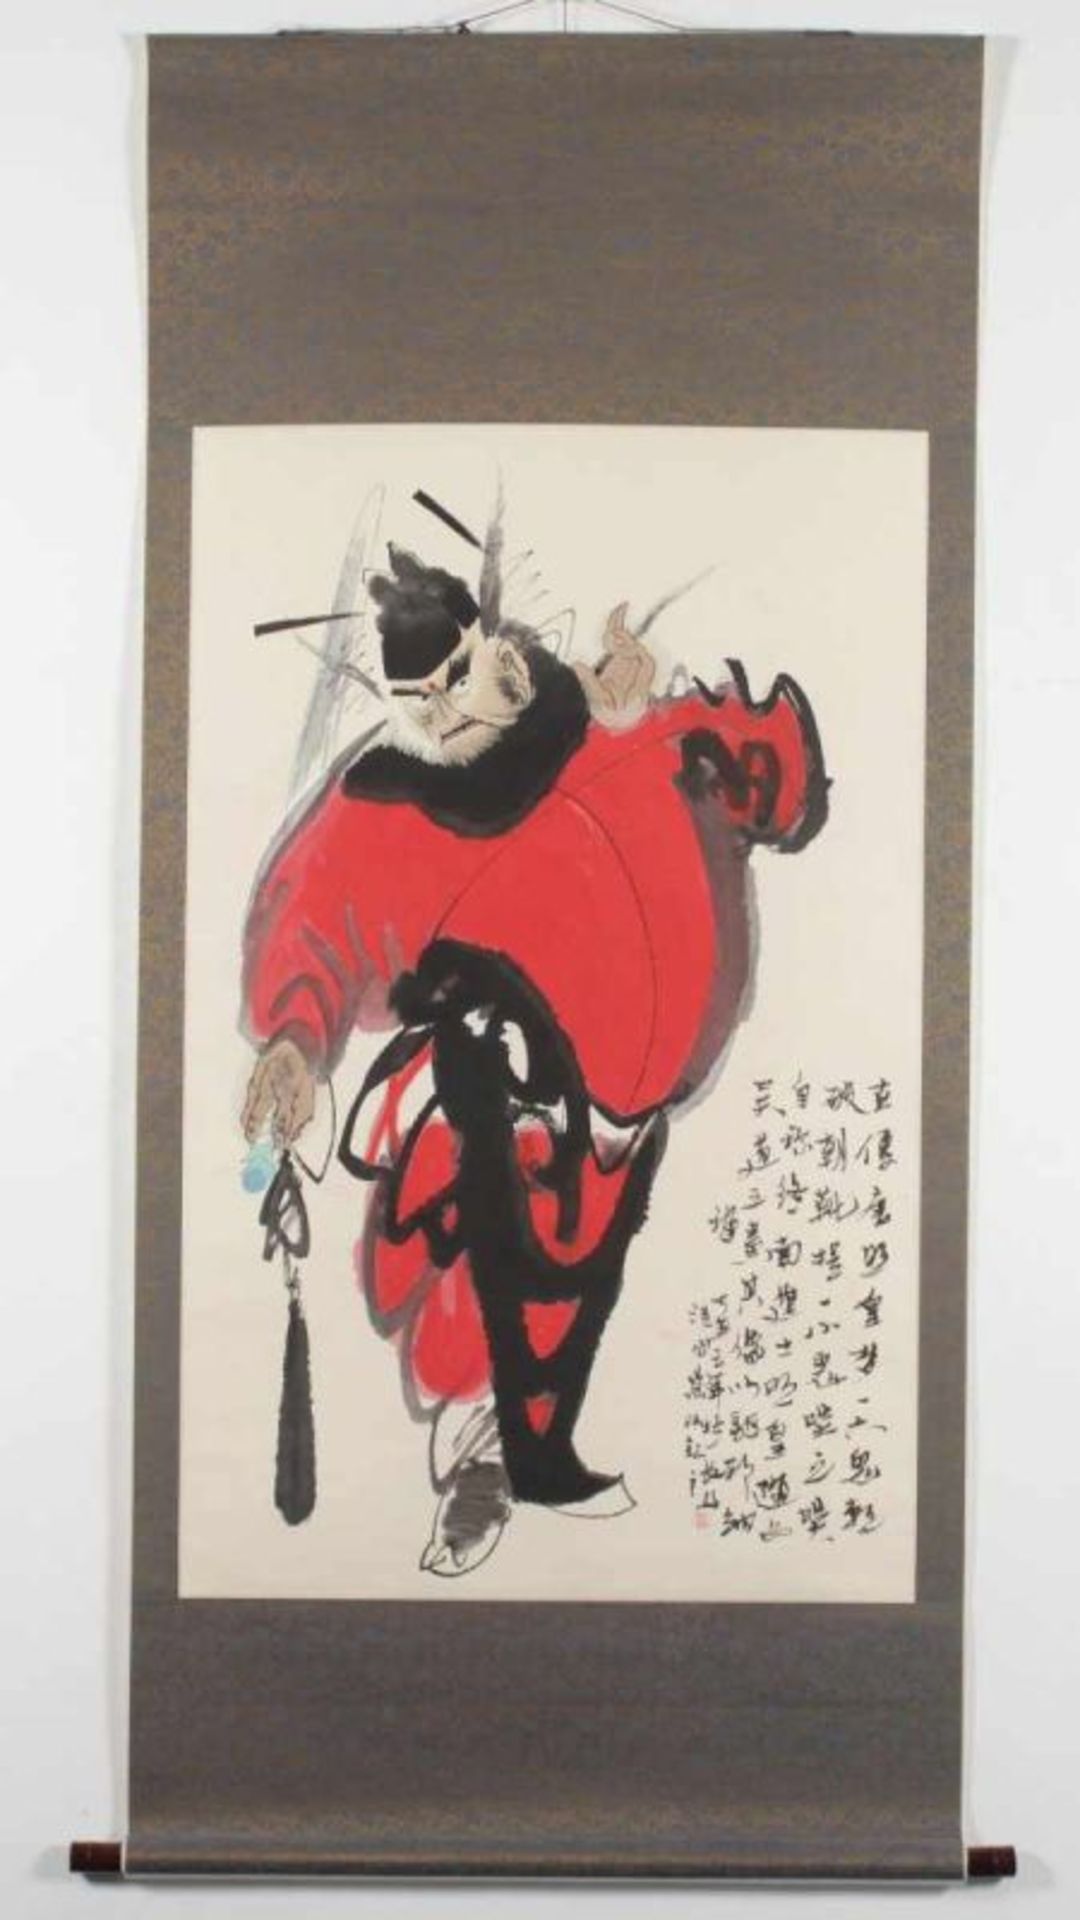 ROLLBILD, Tusche und Farben auf Papier, Aufschrift und Siegel, 100 x 64, montiert, CHINA, 20.Jh. - Bild 2 aus 3